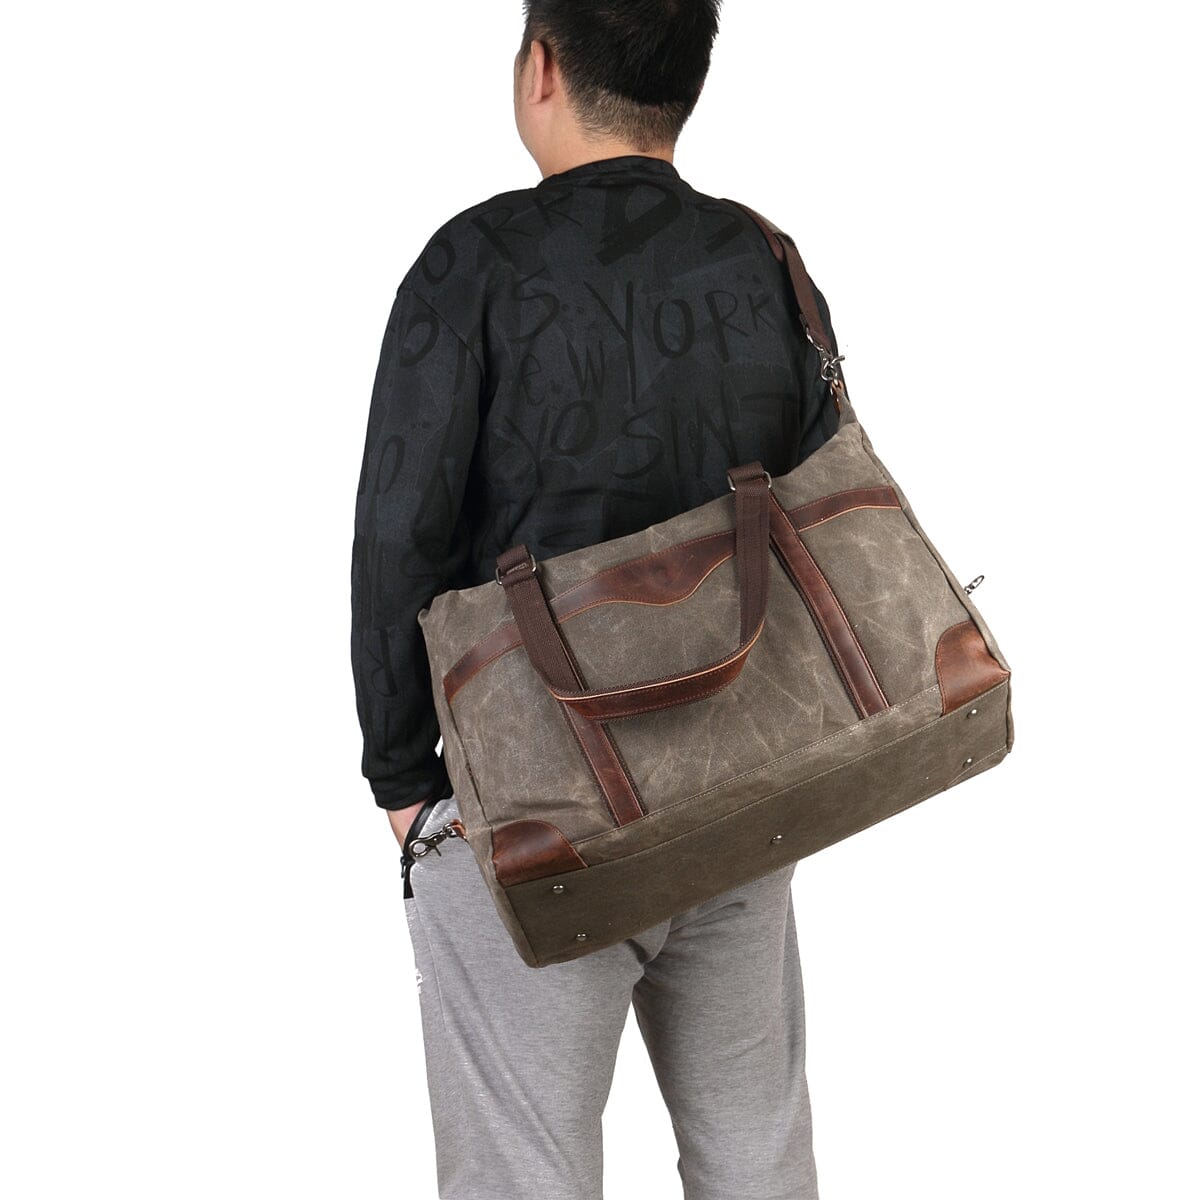 homme portant un sac de voyage toile et cuir vert armée